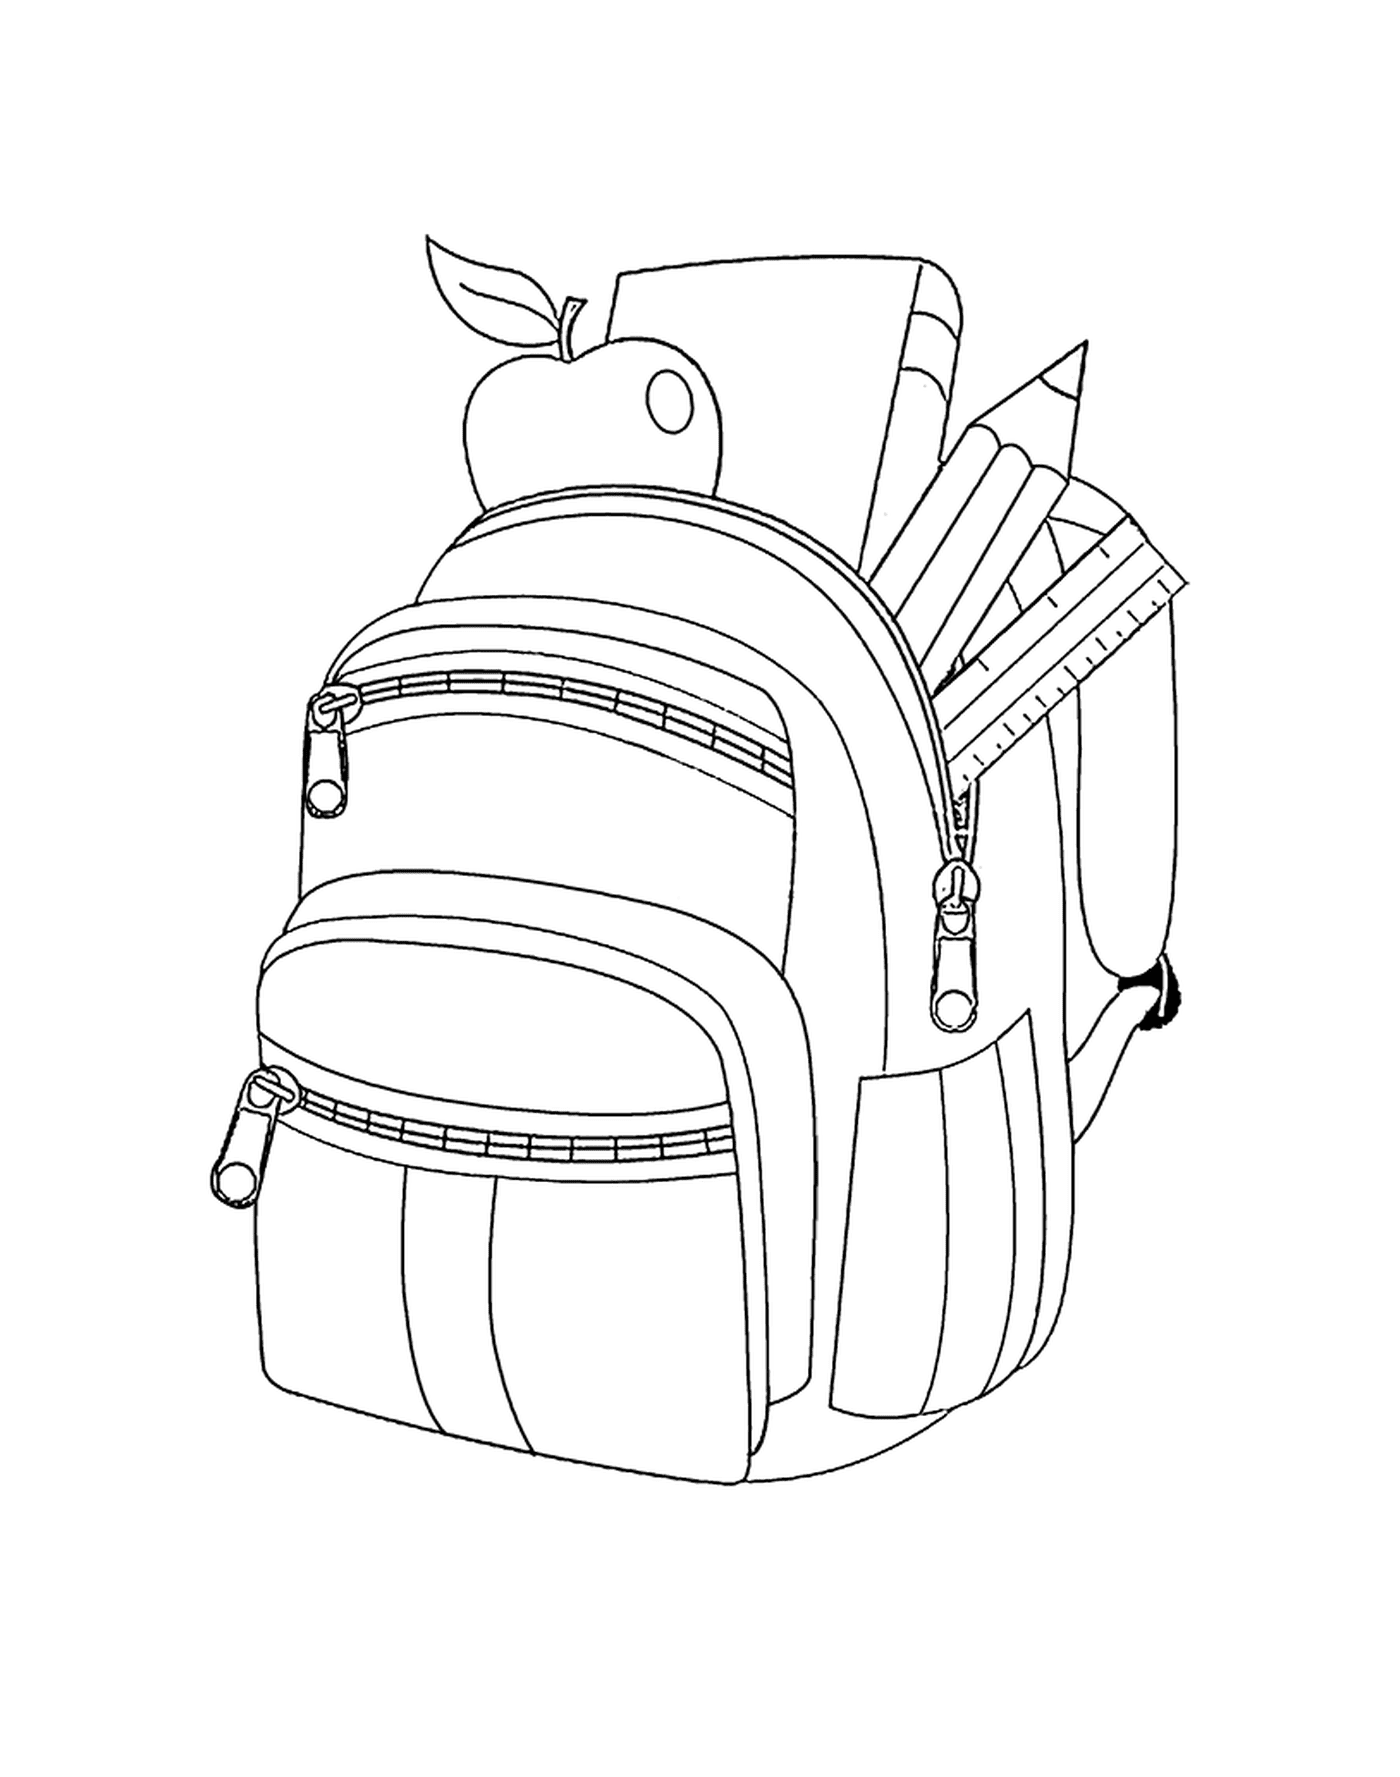  Ein Rucksack mit Stiften und einem Apfel 